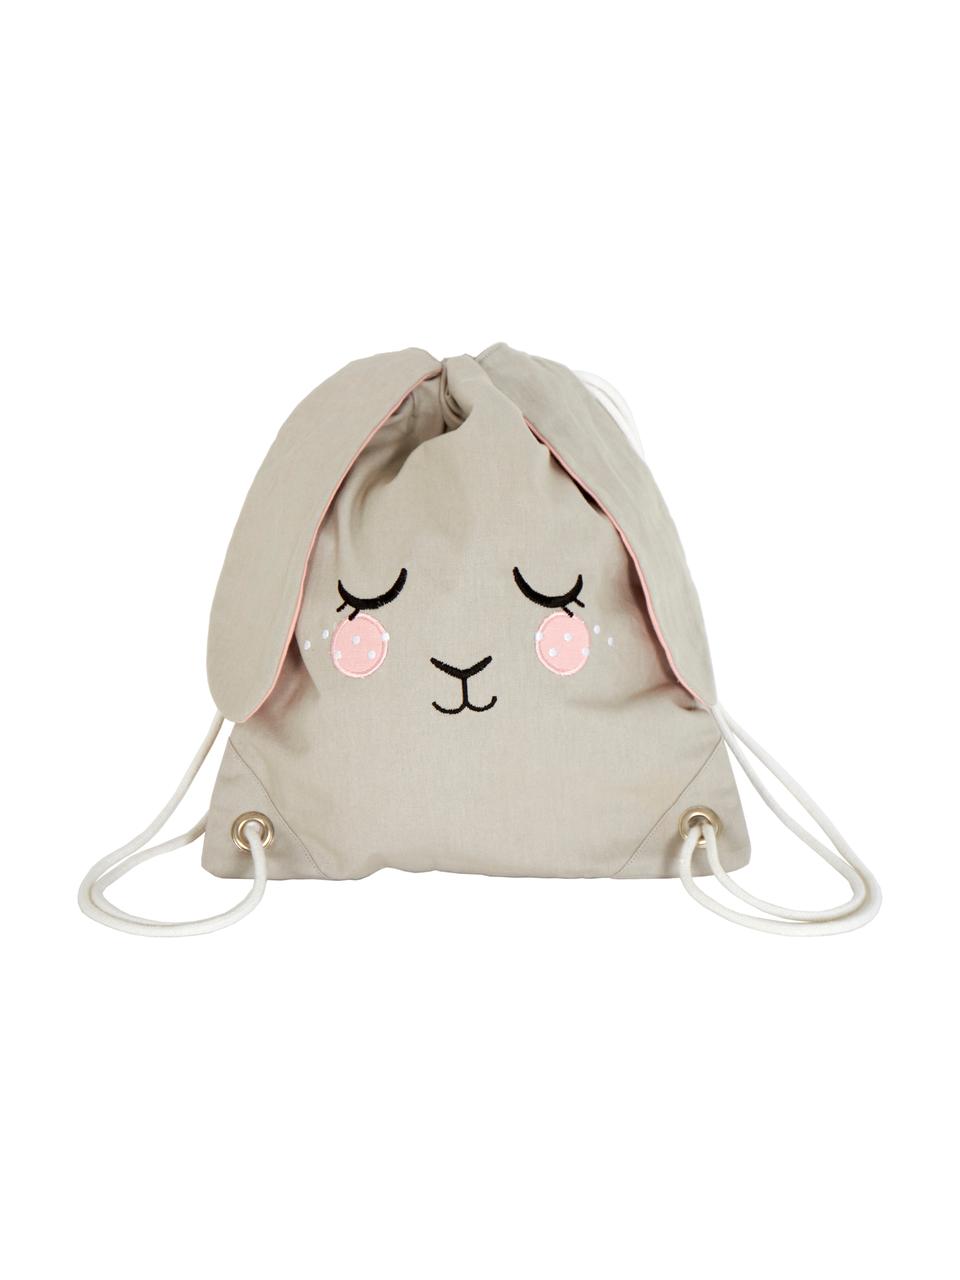 Plecak dla dzieci Bunny, 100% bawełna organiczna z certyfikatem GOTS, Beżowy, blady różowy, S 30 x W 35 cm